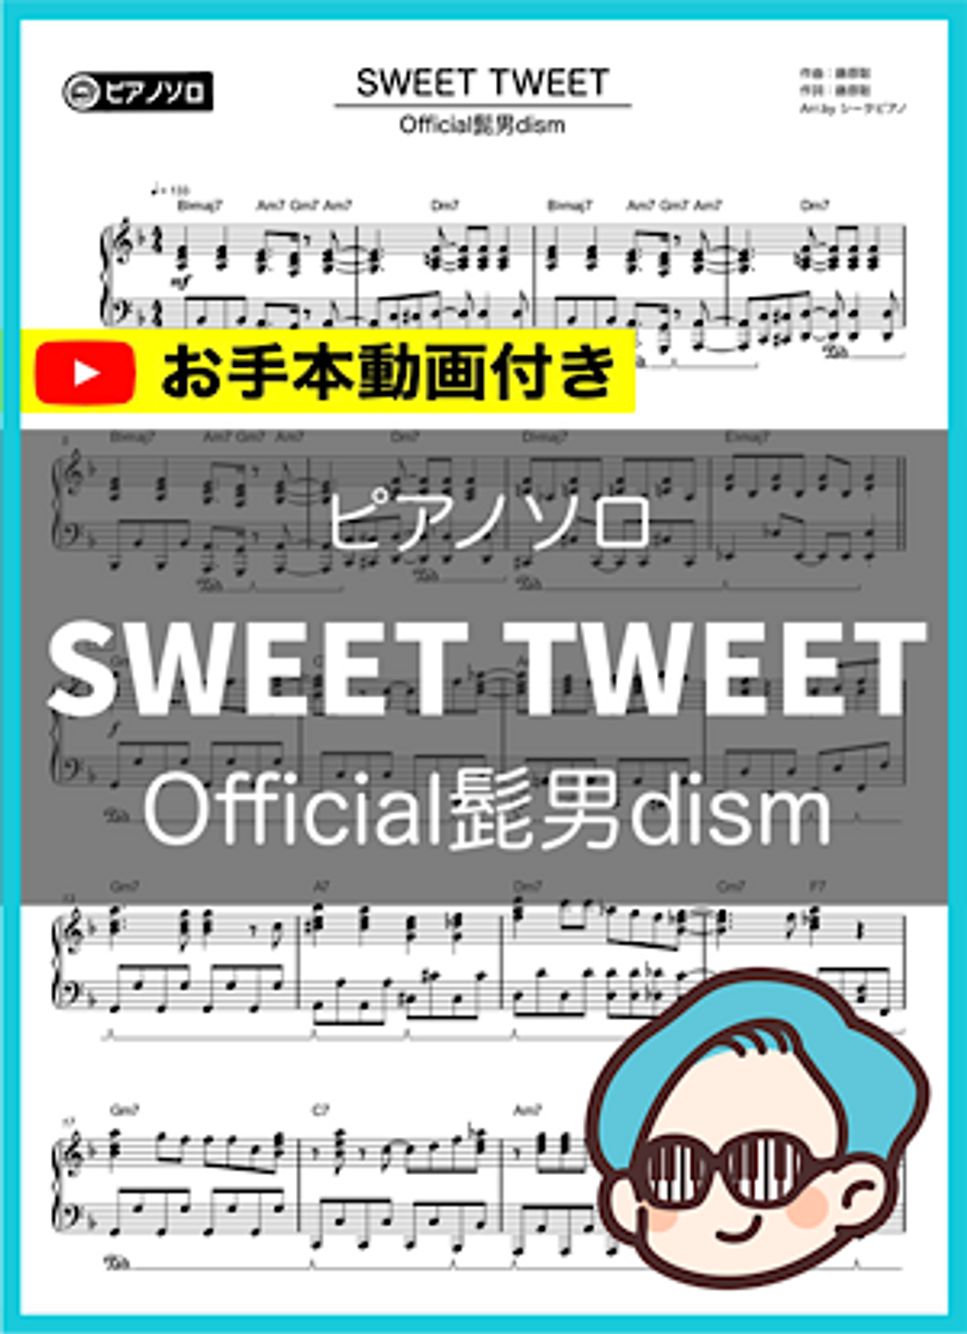 Official髭男dism - SWEET TWEET 楽譜 by シータピアノ